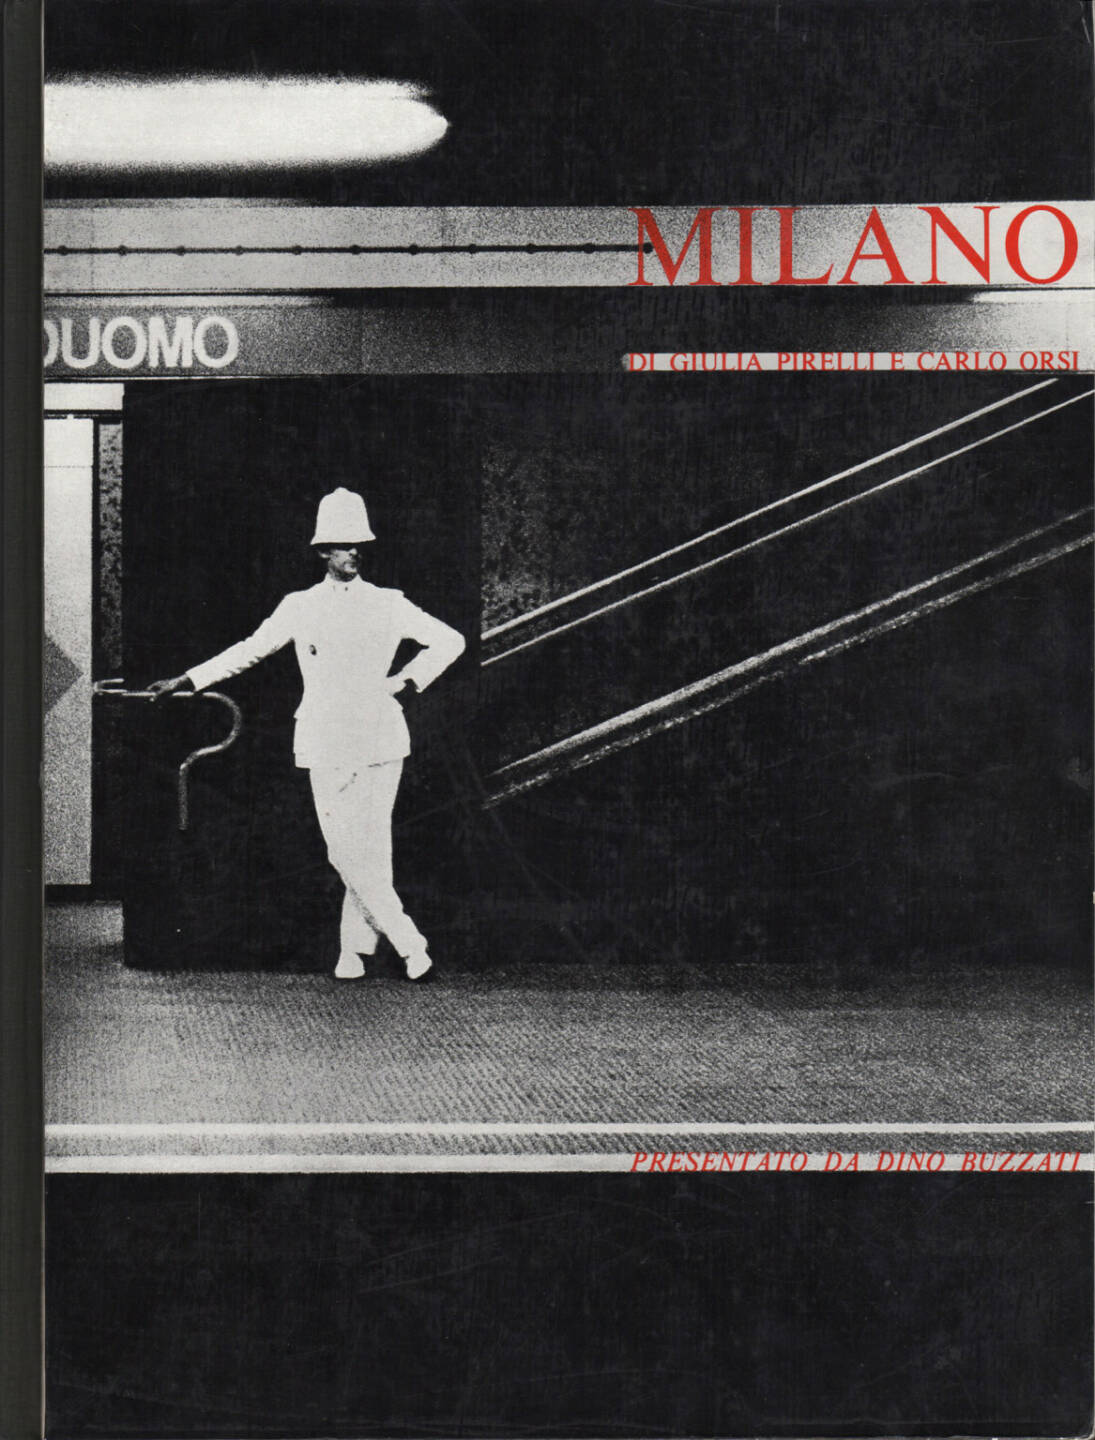 Giulia Pirelli and Carlo Orsi - Milano, Bruno Alfieri Editore 1965, Cover - http://josefchladek.com/book/giulia_pirelli_and_carlo_orsi_-_milano